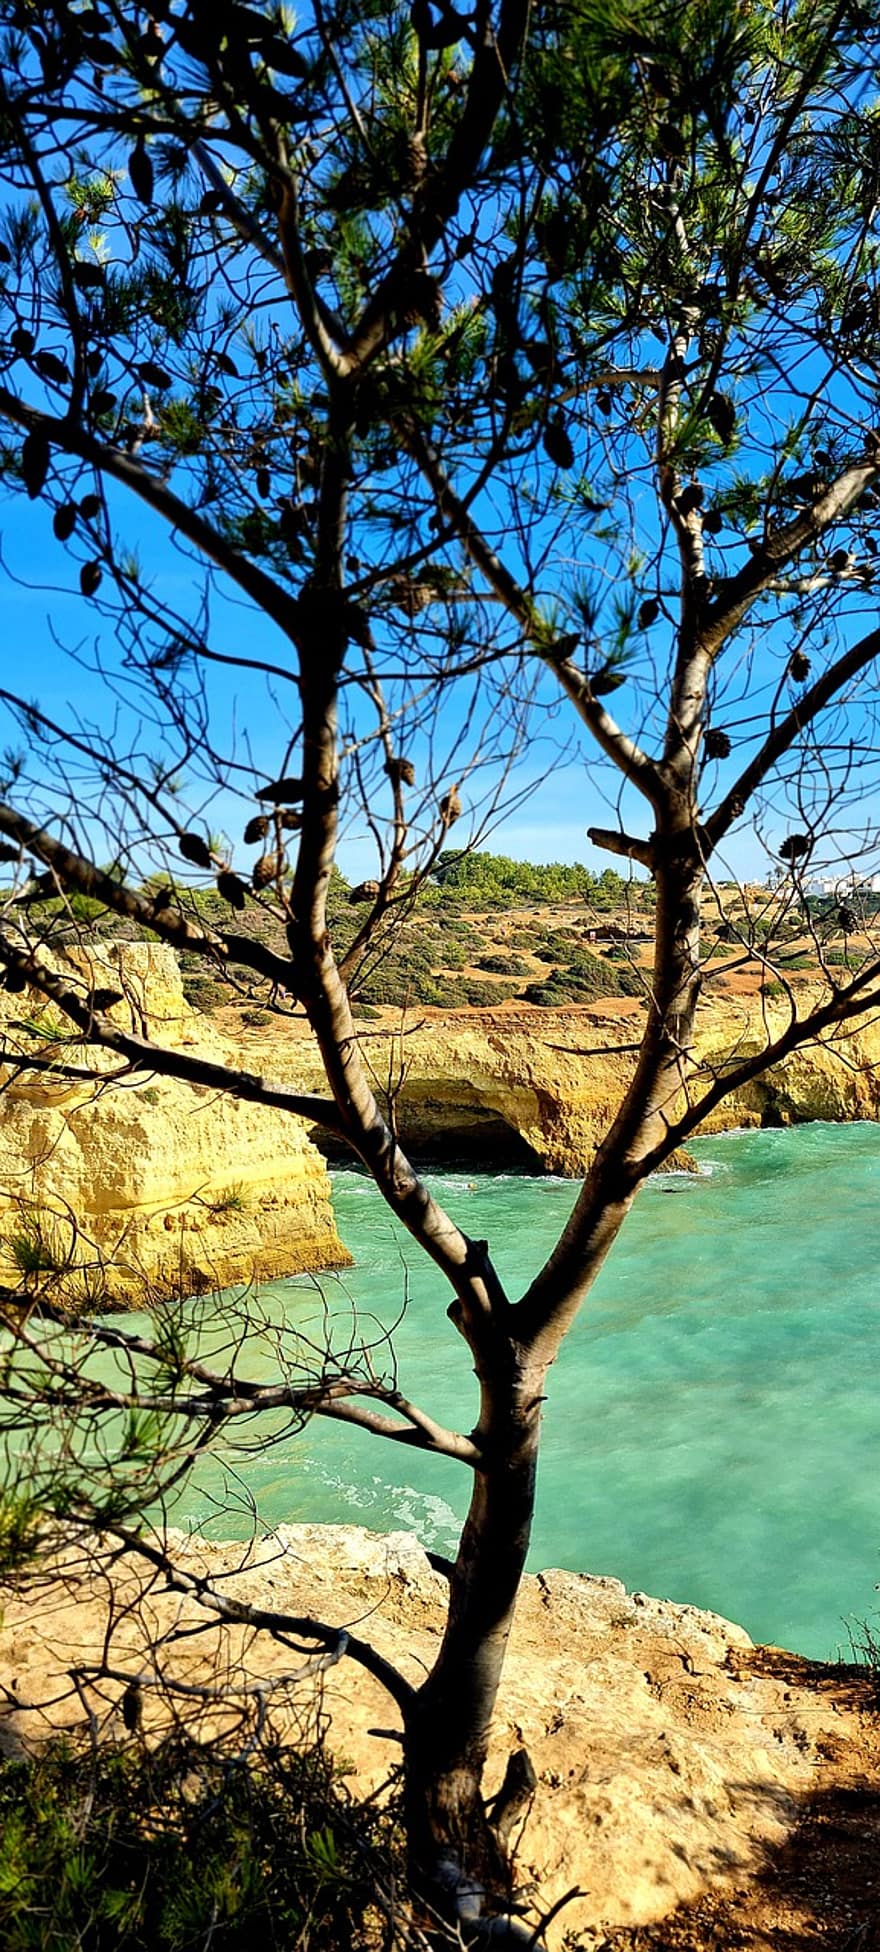 Algarve, oceano, escursione, viaggiare, mare costiero, roccia, paesaggio, natura, grotta, acqua, vacanze